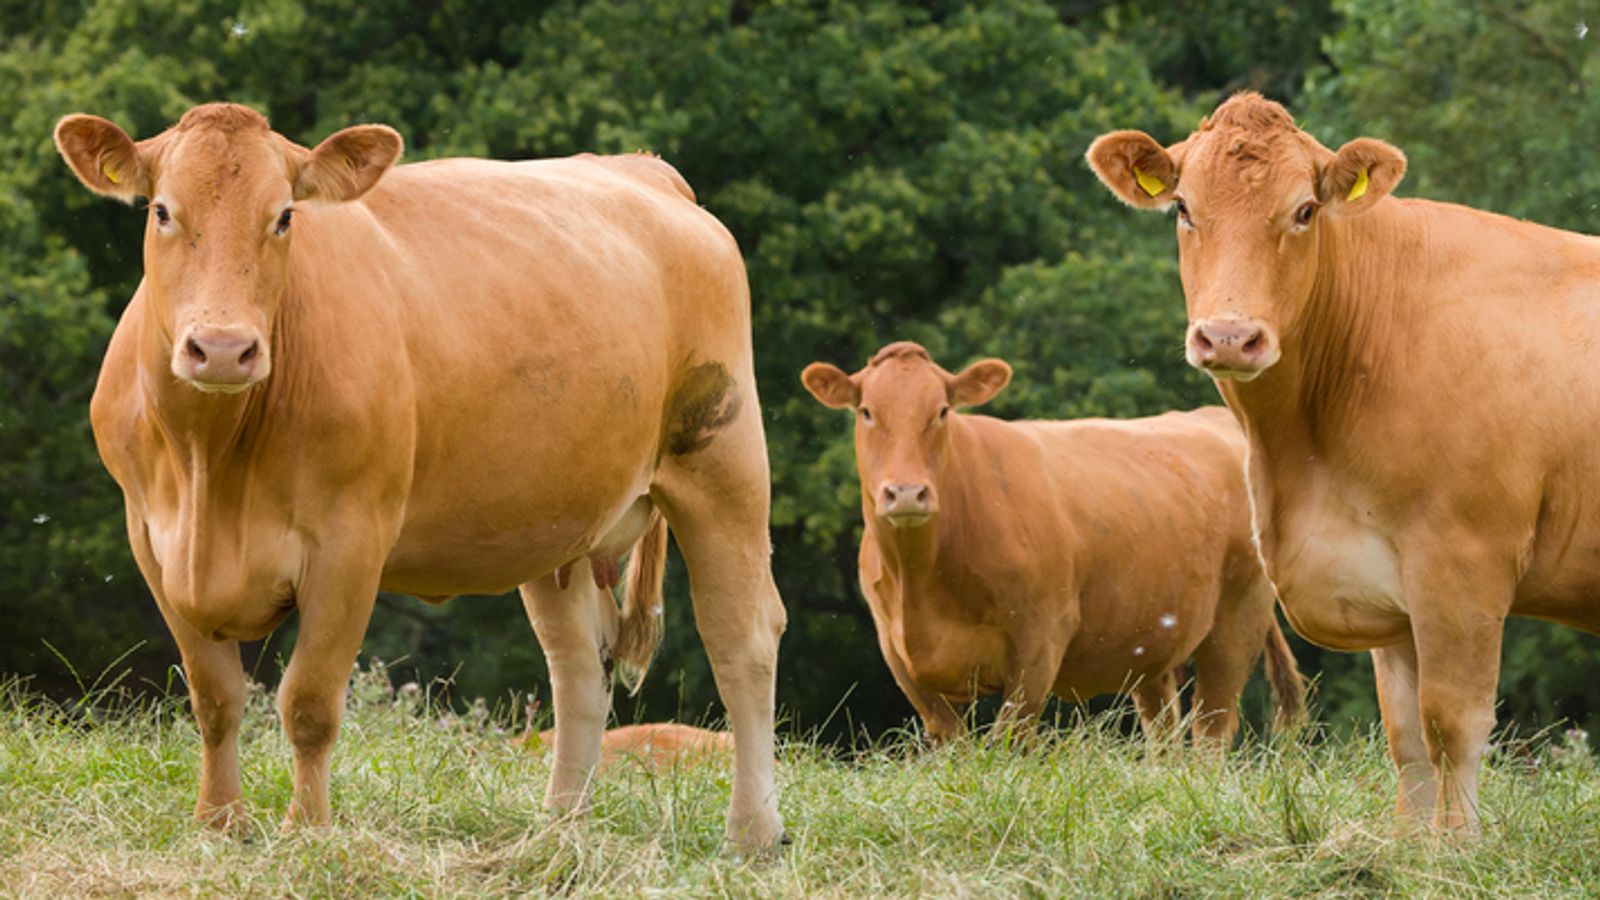 Син език: Правителството предупреждава, че има „голяма вероятност“ нов щам на животински вирус да се разпространи сред говеда в Обединеното кралство